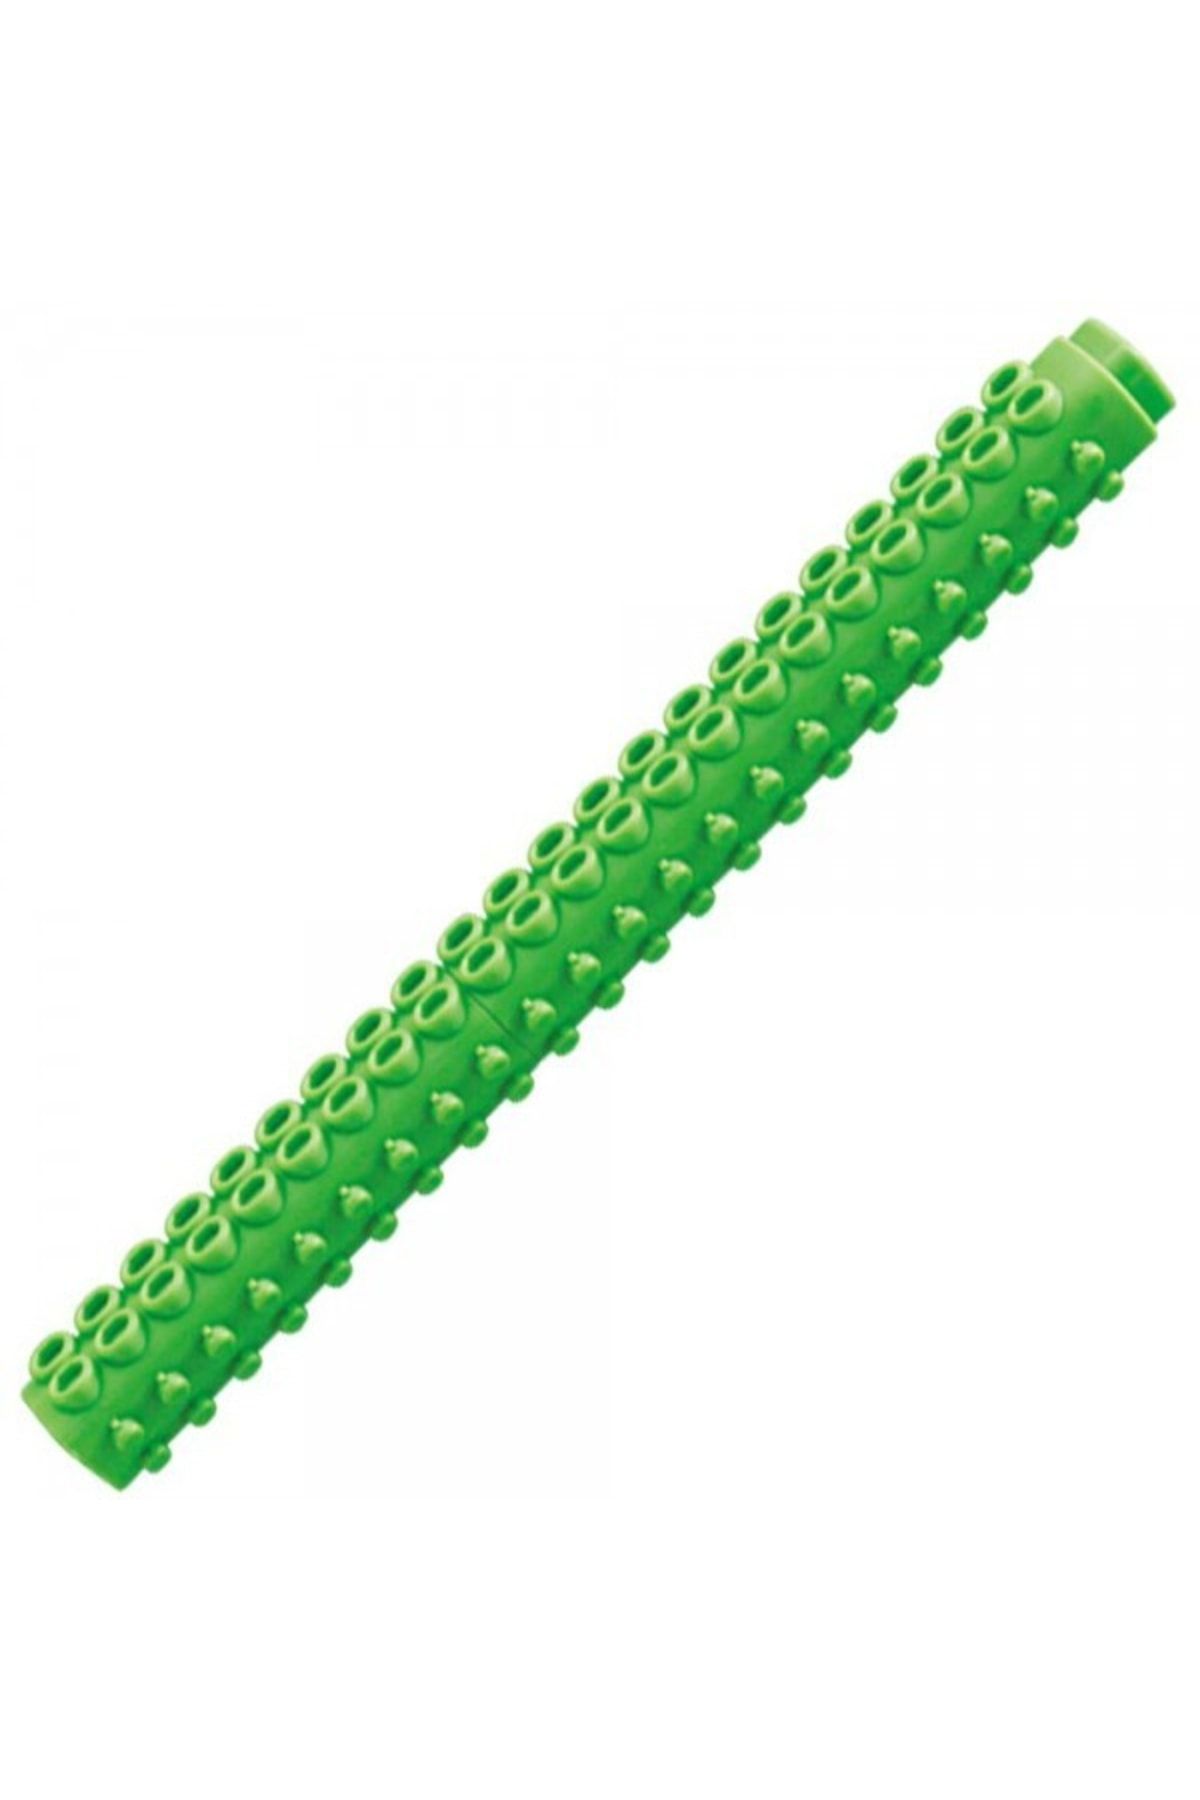 artline : Stix Colouring Marker Keçe Uçlu Boya Kalemi : 1,2 Mm : Fıstık Yeşili